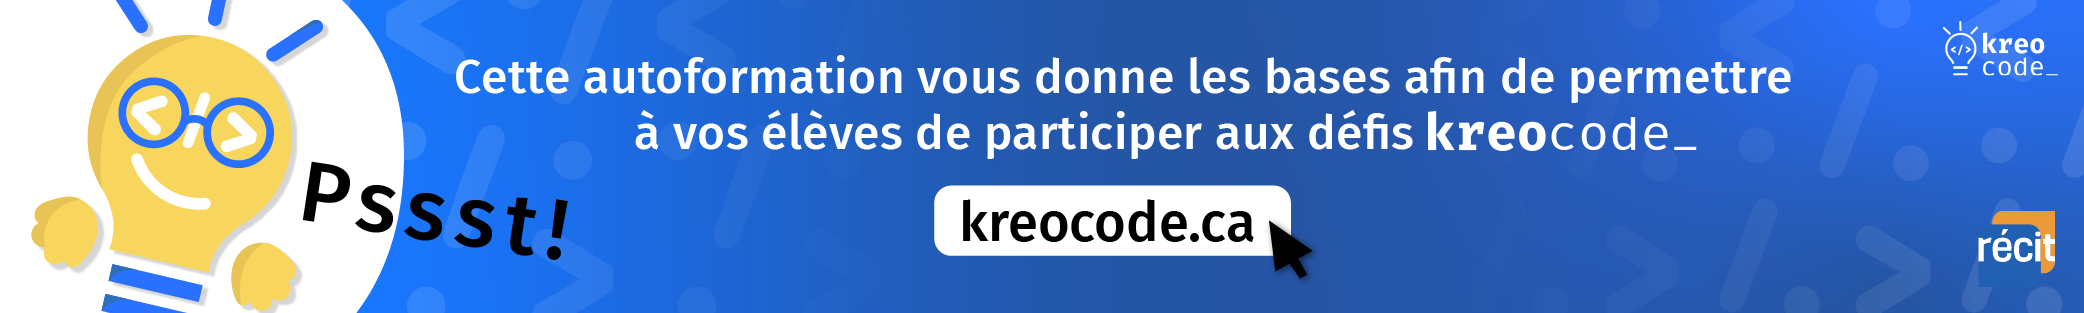 Cette autofofmation donne les bases pour participer aux défis Kreocode.ca